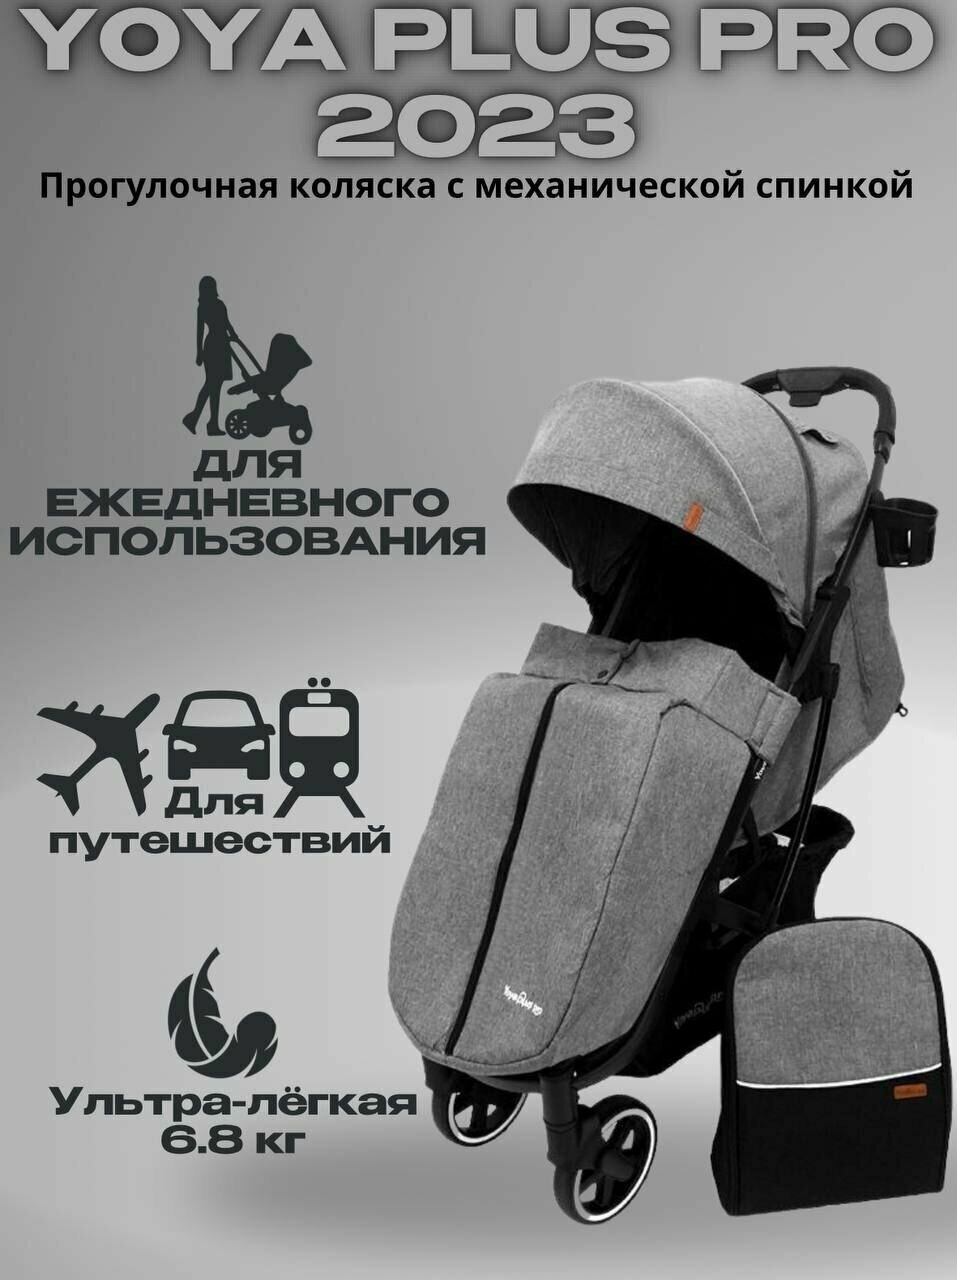 Прогулочная коляска YOYA PLUS PRO 2023 (механическая регулировка спинки) + сумка, серая на черной раме.